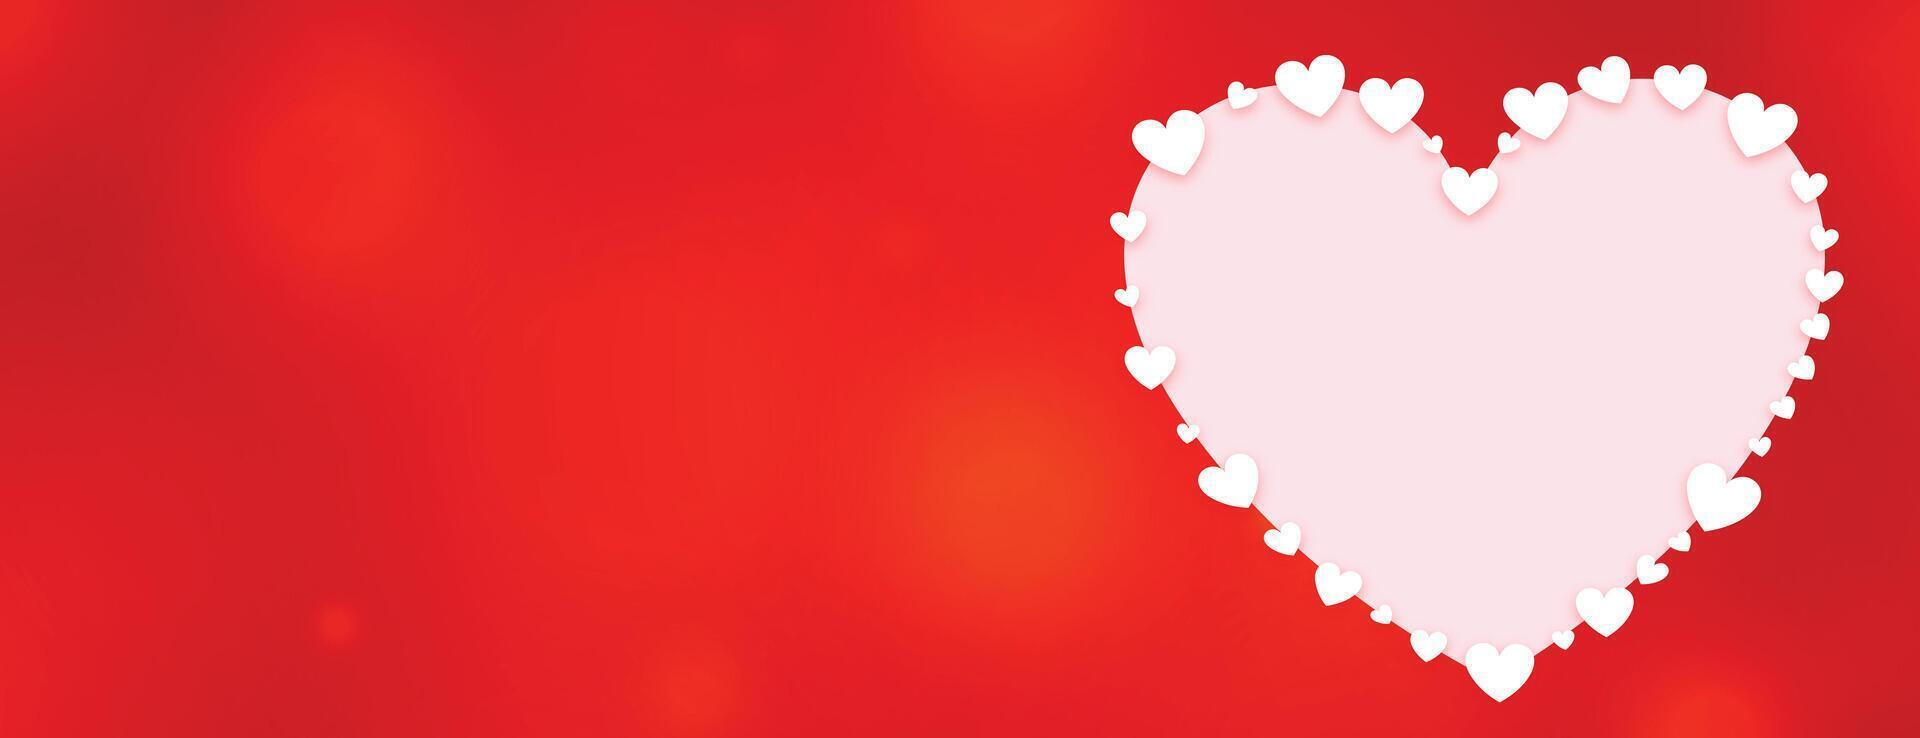 dekorativ hjärta valentines dag röd baner vektor